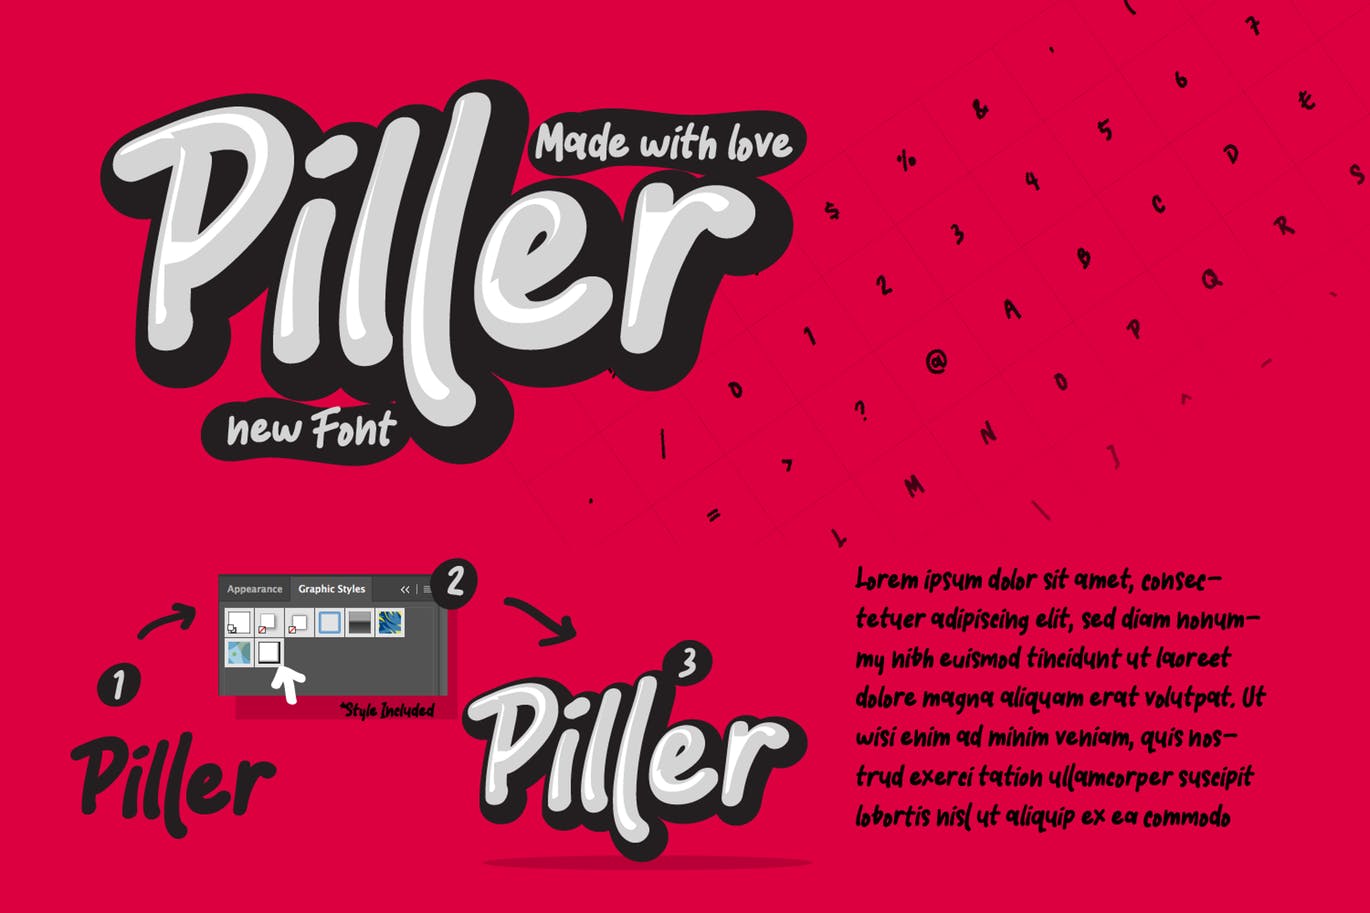 创意休闲时尚英文书法字体素材库精选 Piller the casual trendy font插图